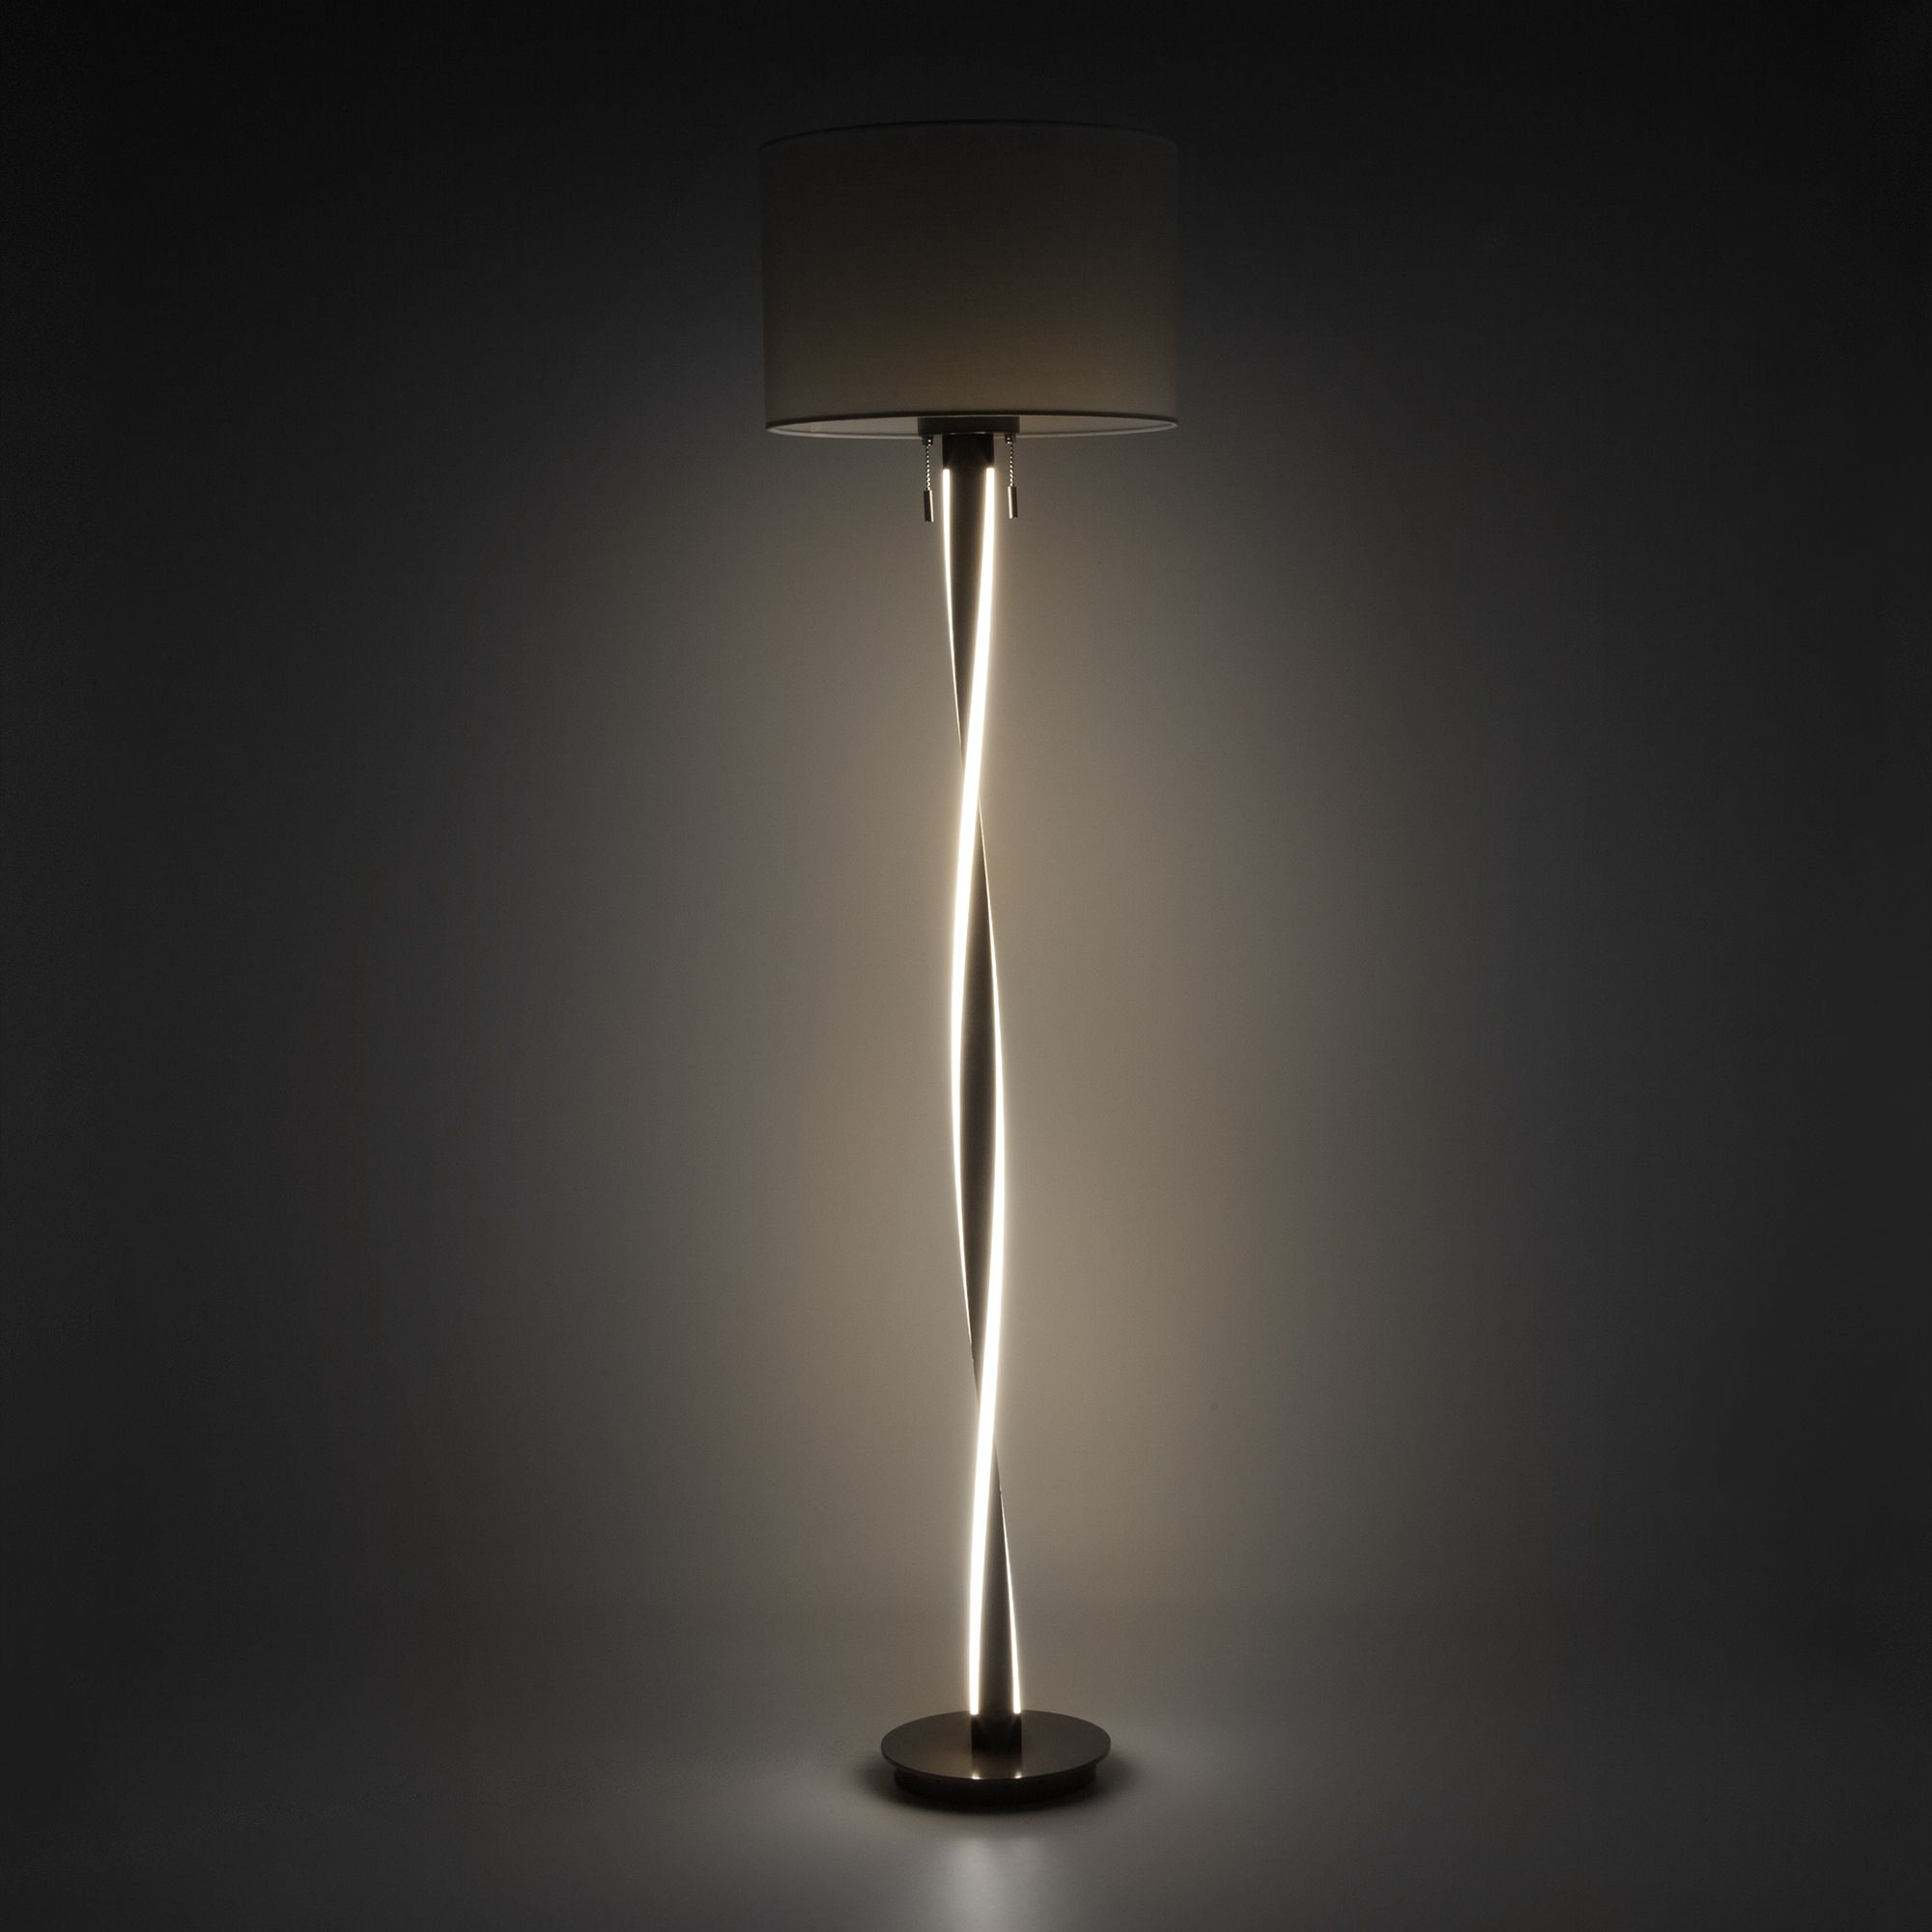 Напольный светодиодный светильник с тканевым абажуром Bogate's Titan 990 белый / коричневый. Фото 4